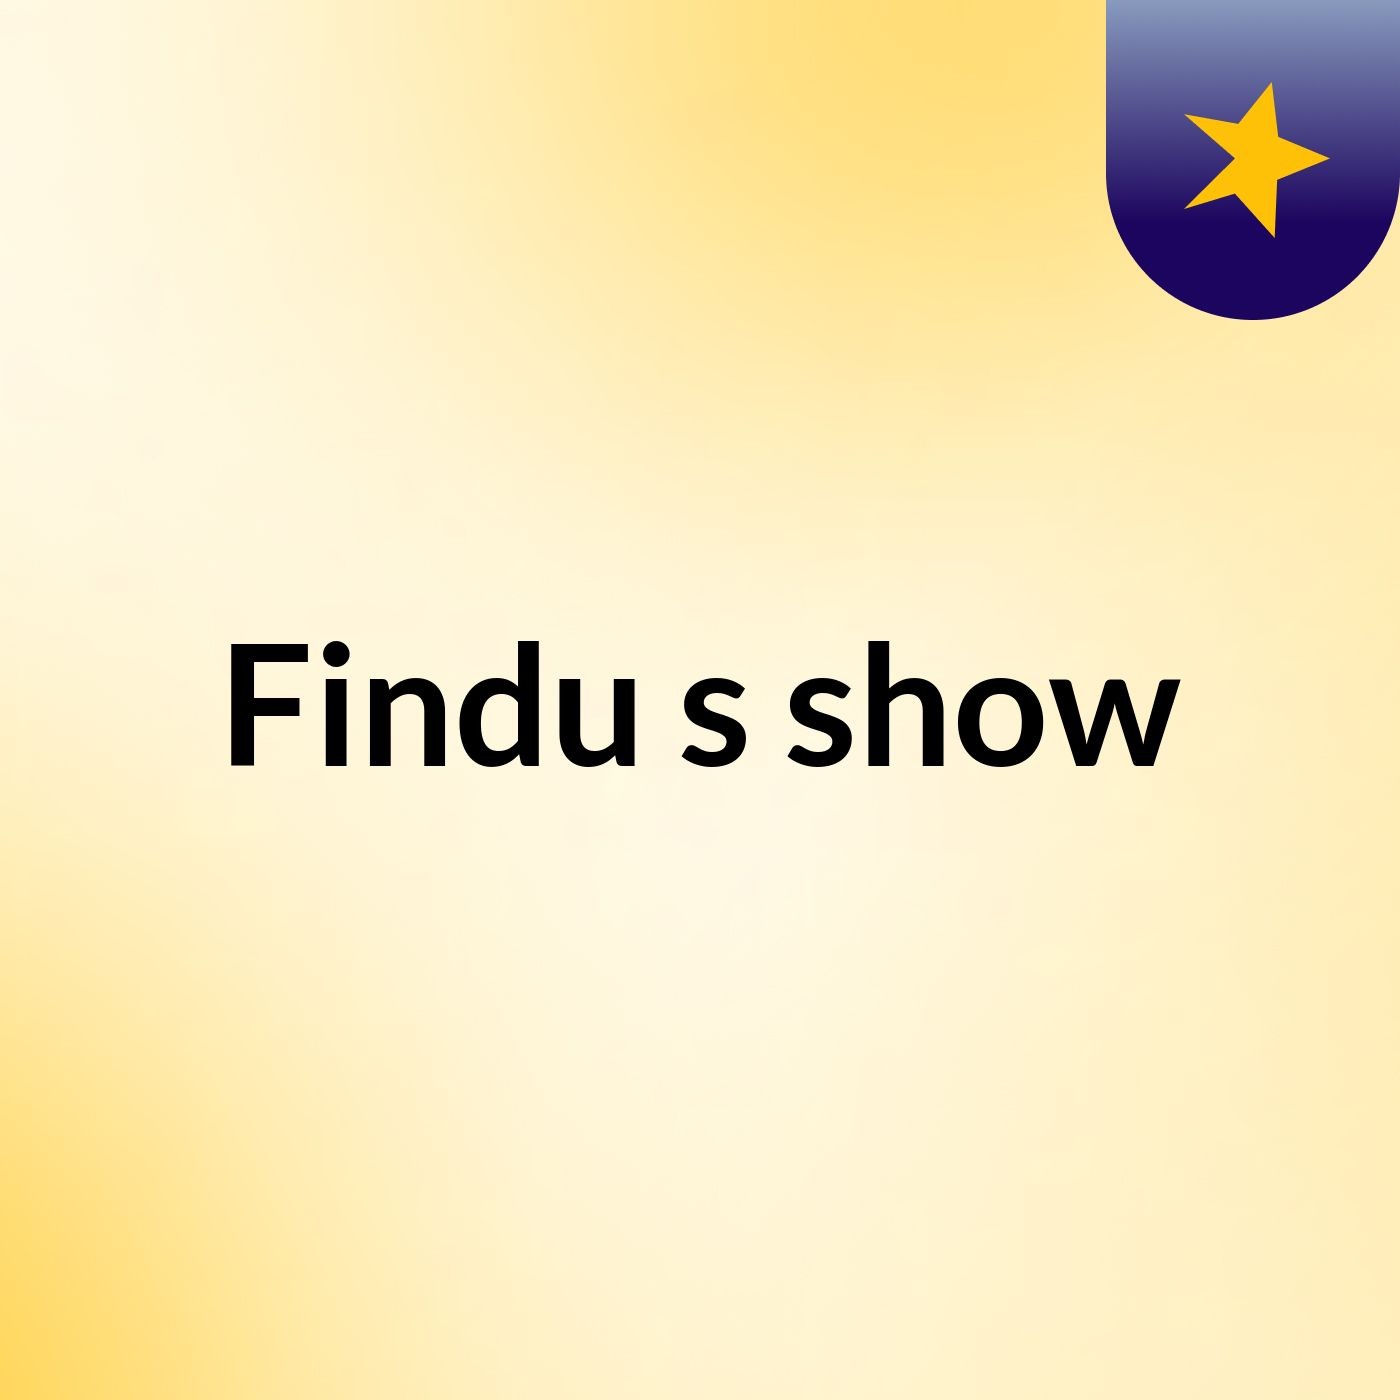 Findu's show